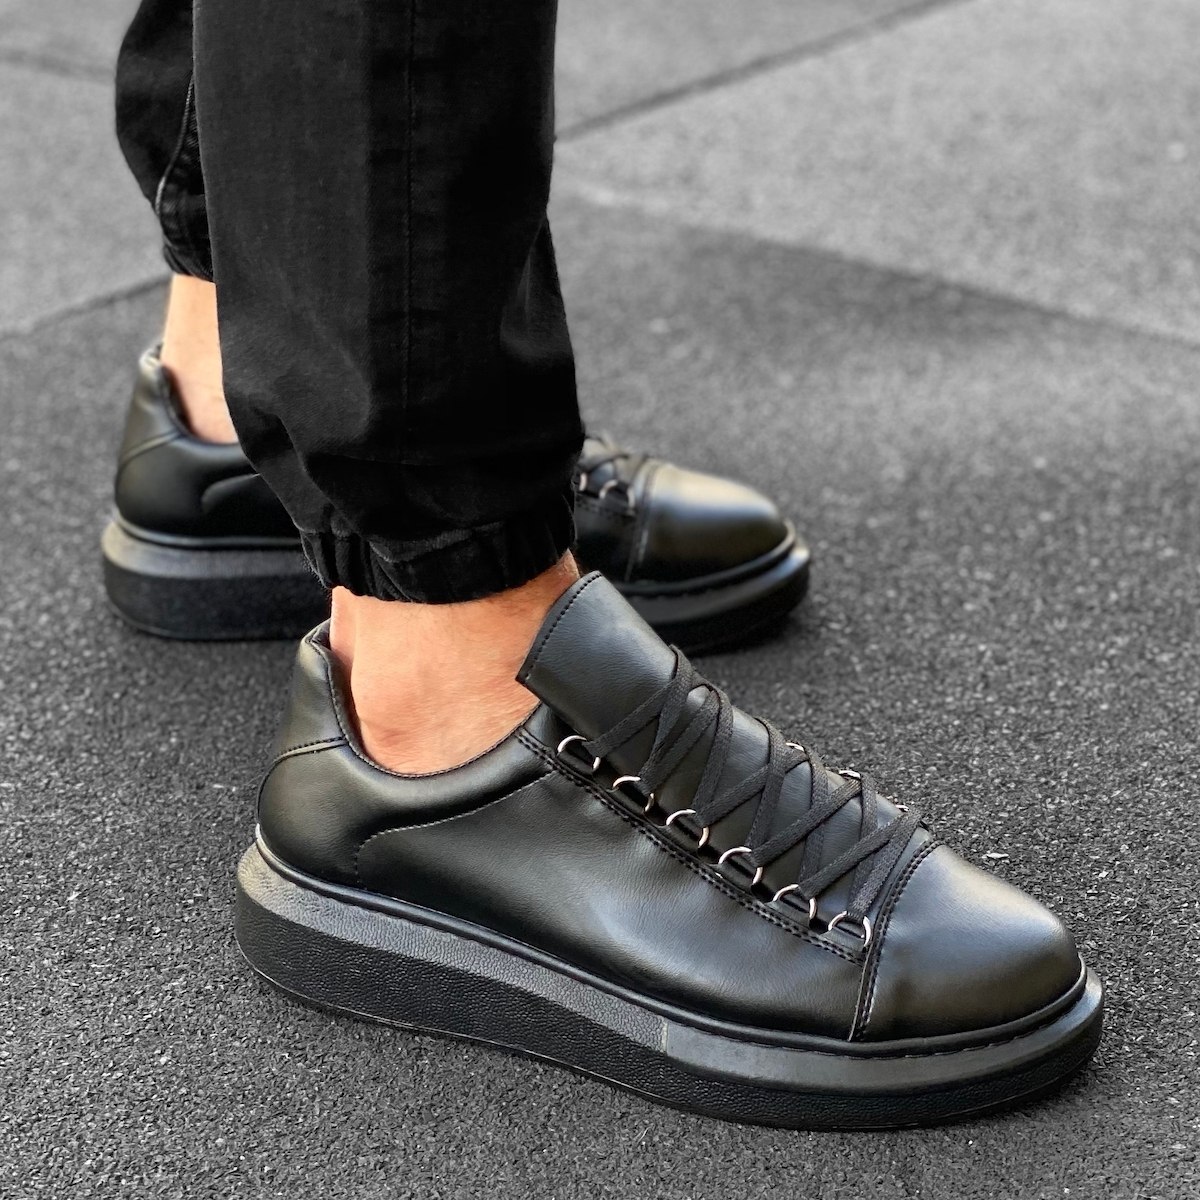 Herren hohe Low Top Sneakers Schuhe in schwarz - 1